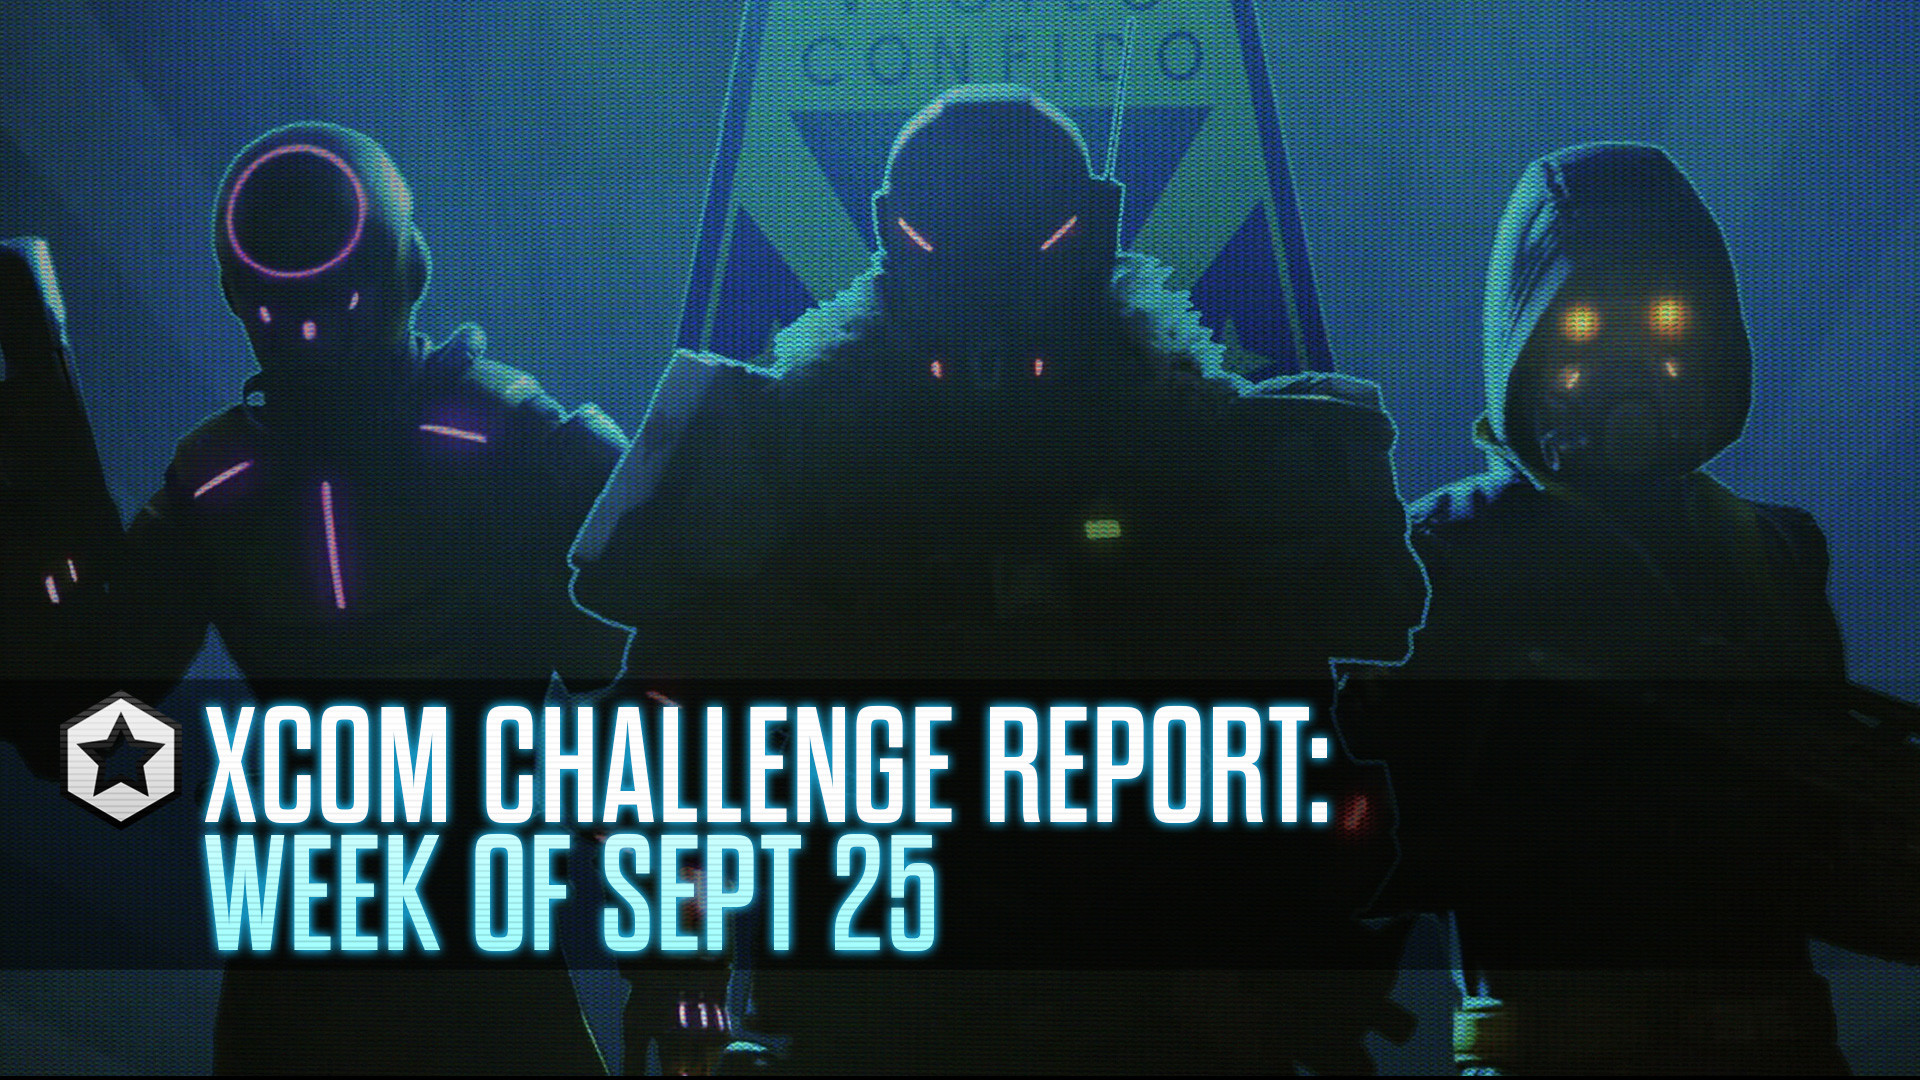 XCOM CHALLENGE REPORT WEEK OF SEPTEMBER 25